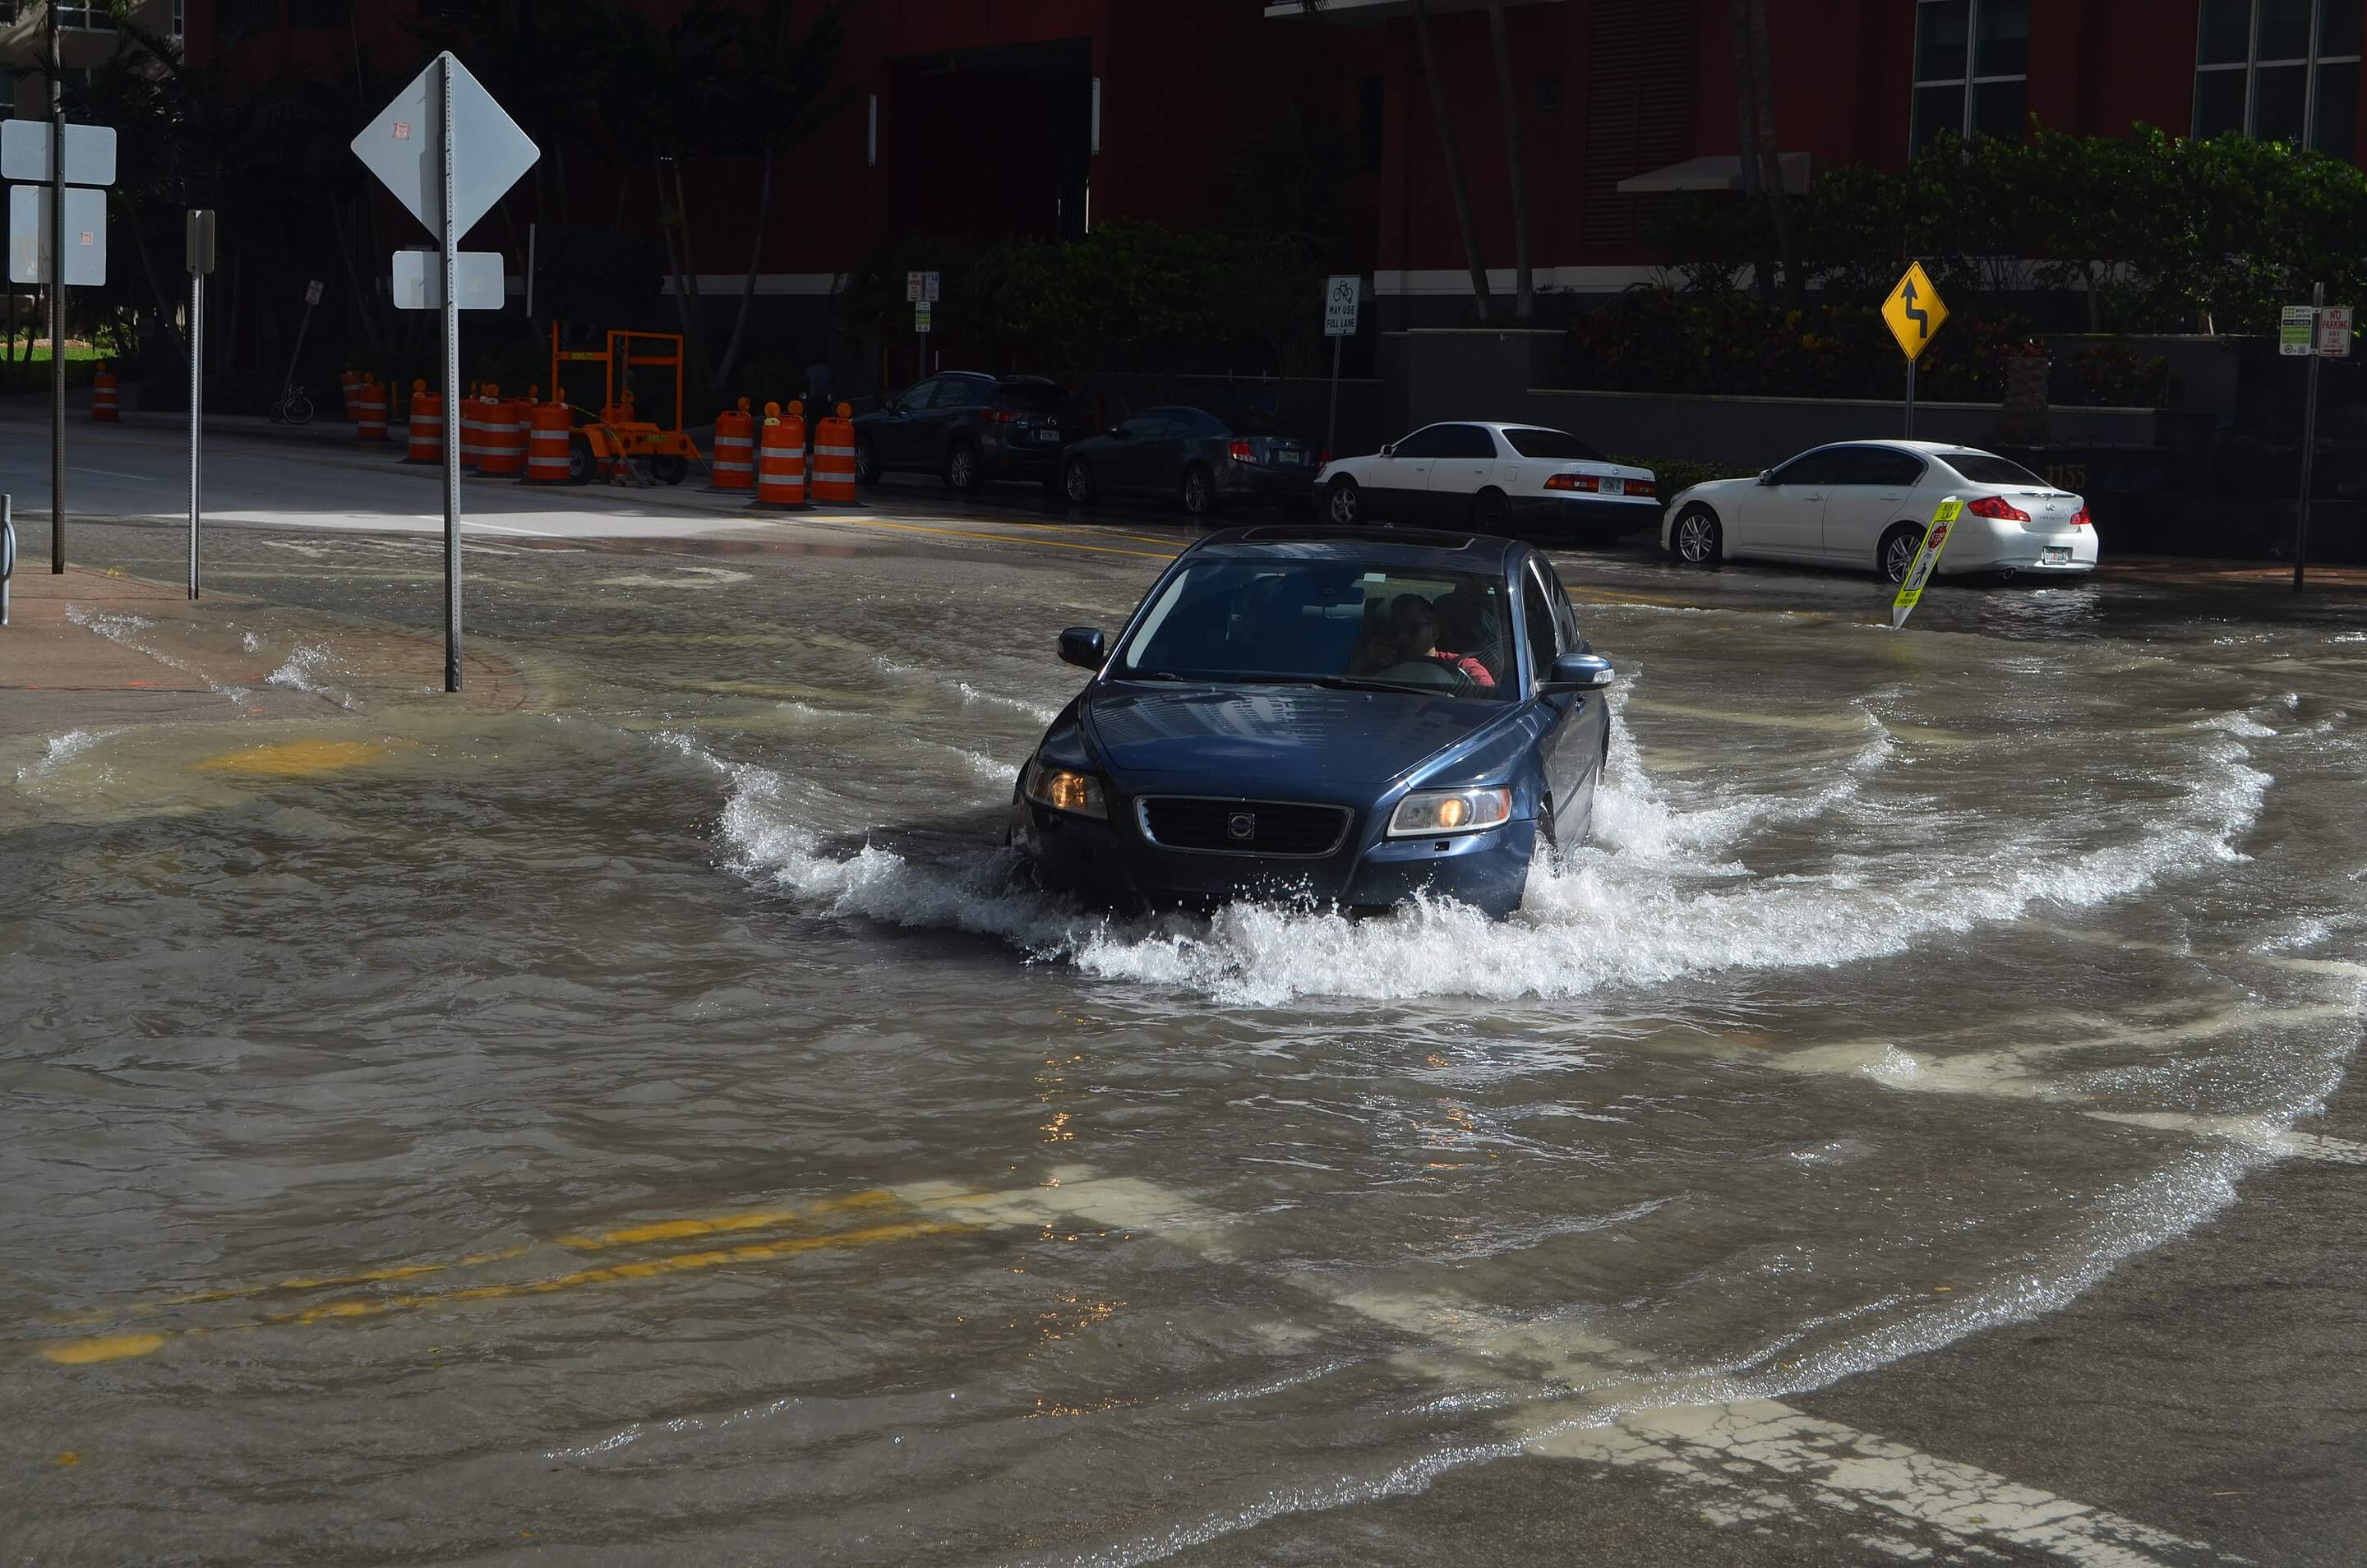 A car driving through a flooded street